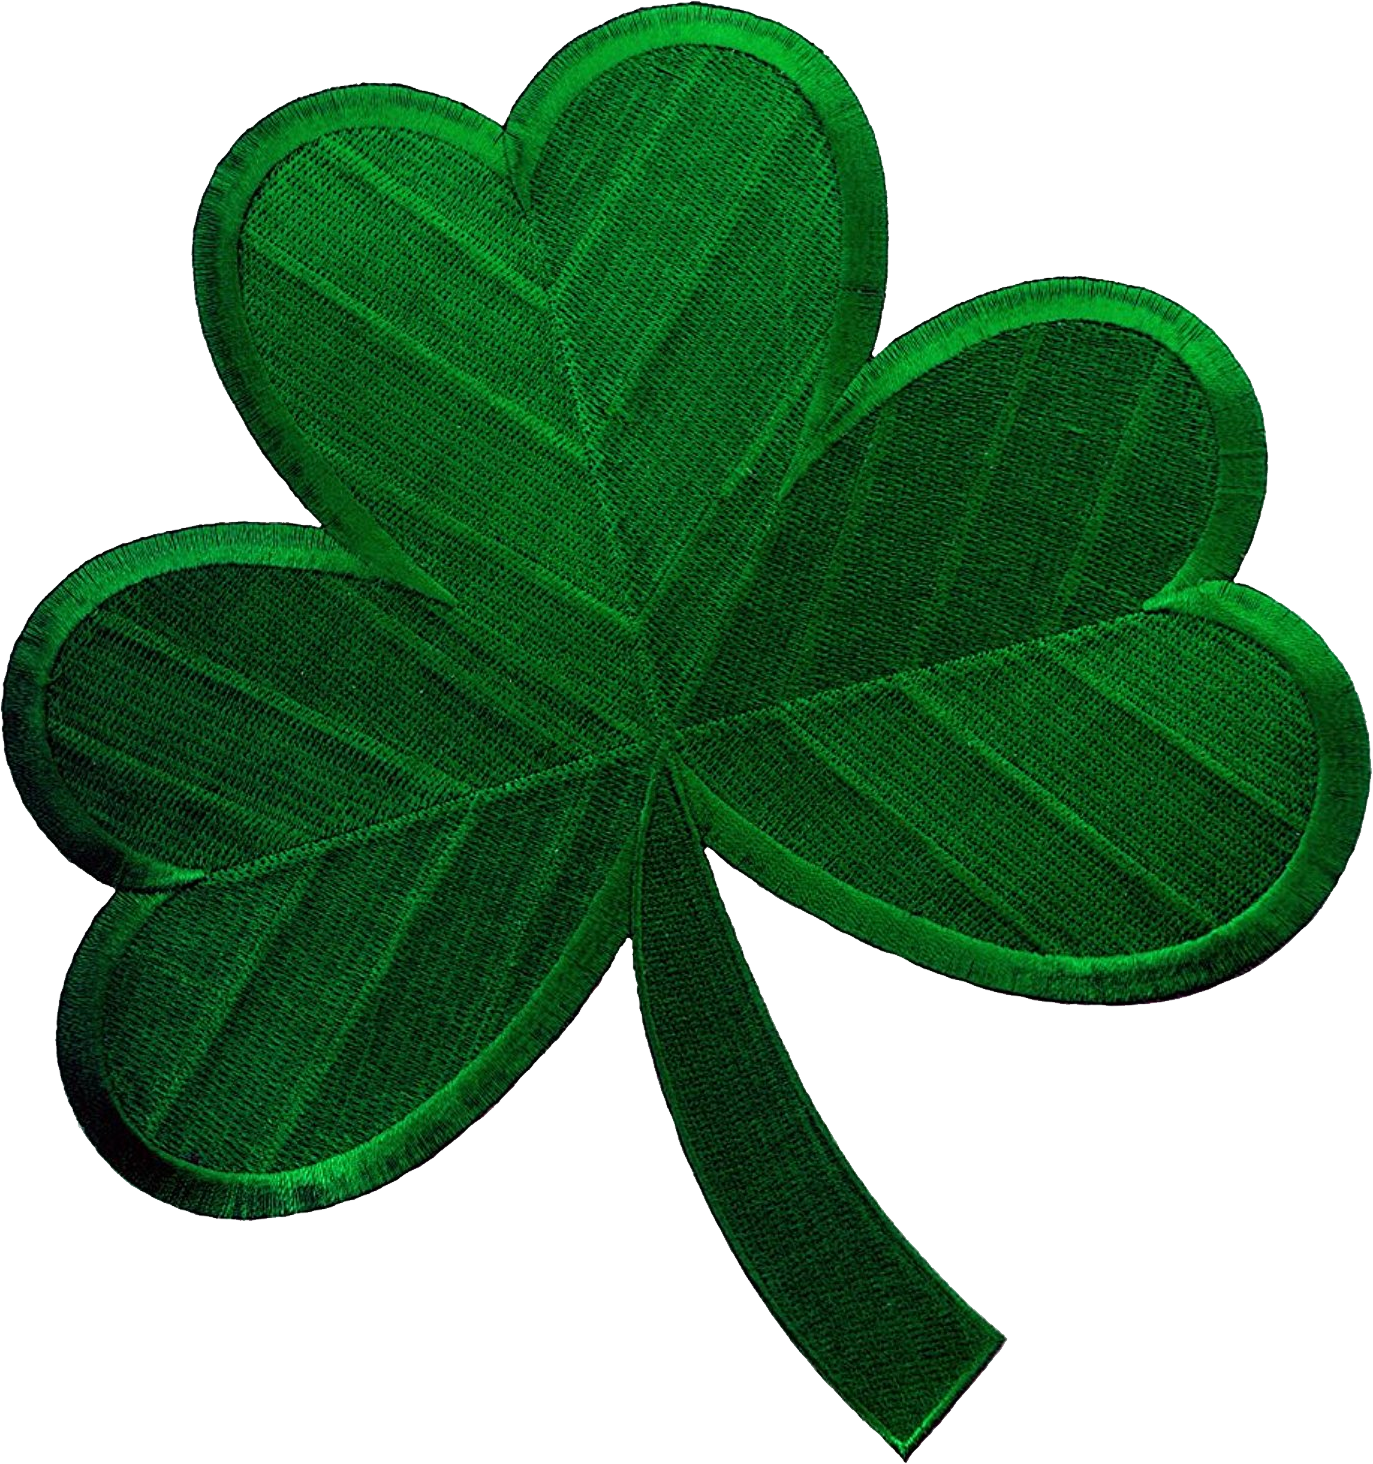 Clever irish. Трехлистный Клевер символ Ирландии. Северная Ирландия трилистник. Трилистник символ Ирландии. Ирландский Клевер трилистник.